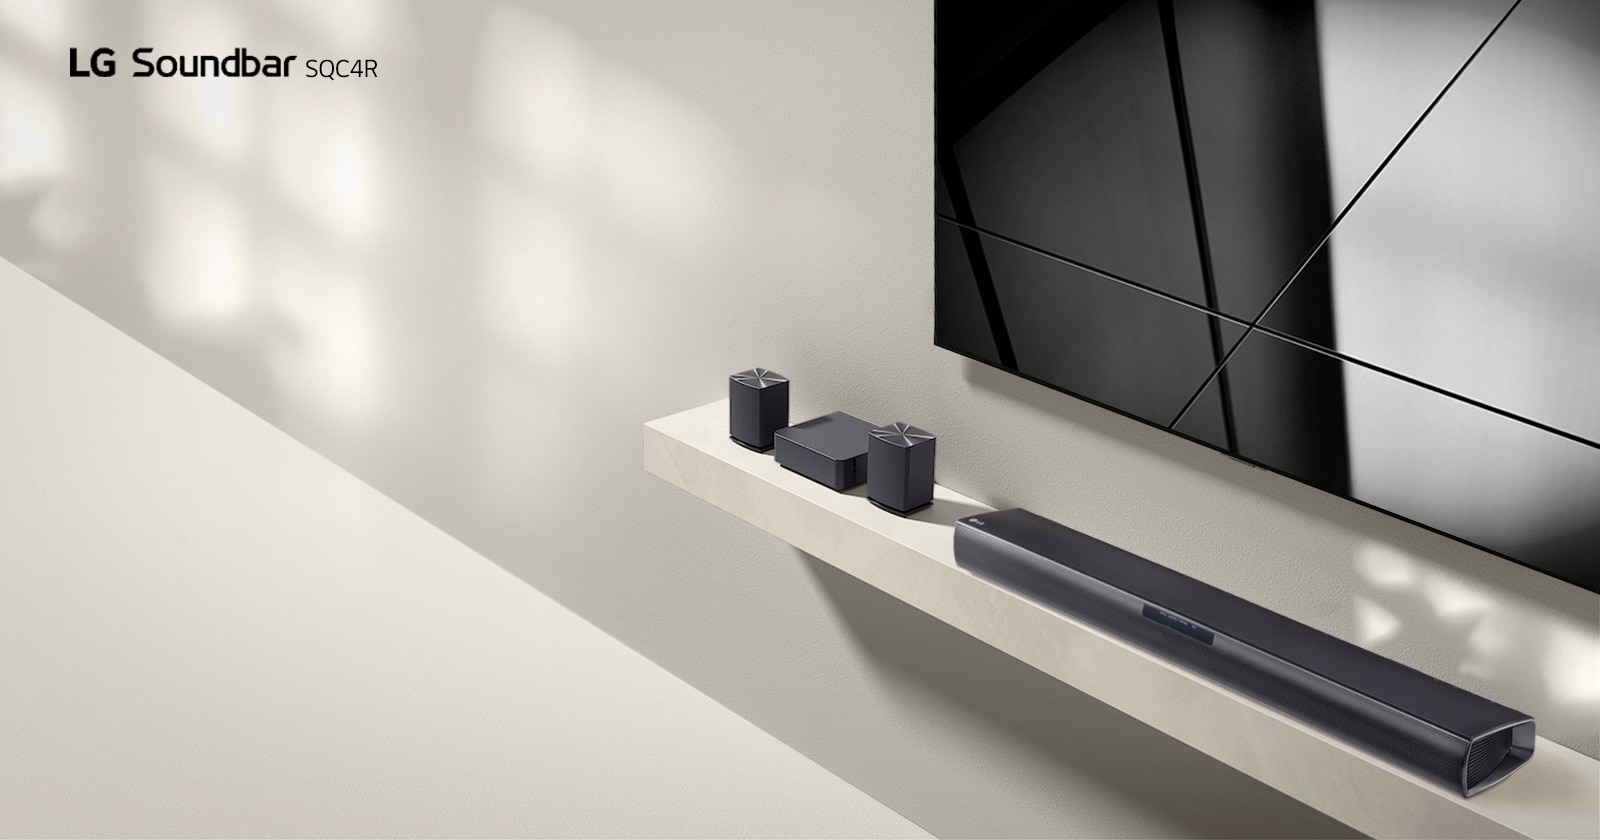 La LG Sound Bar SQC4R et le téléviseur LG sont placés ensemble dans le salon. Le téléviseur est allumé, affichant une image graphique.